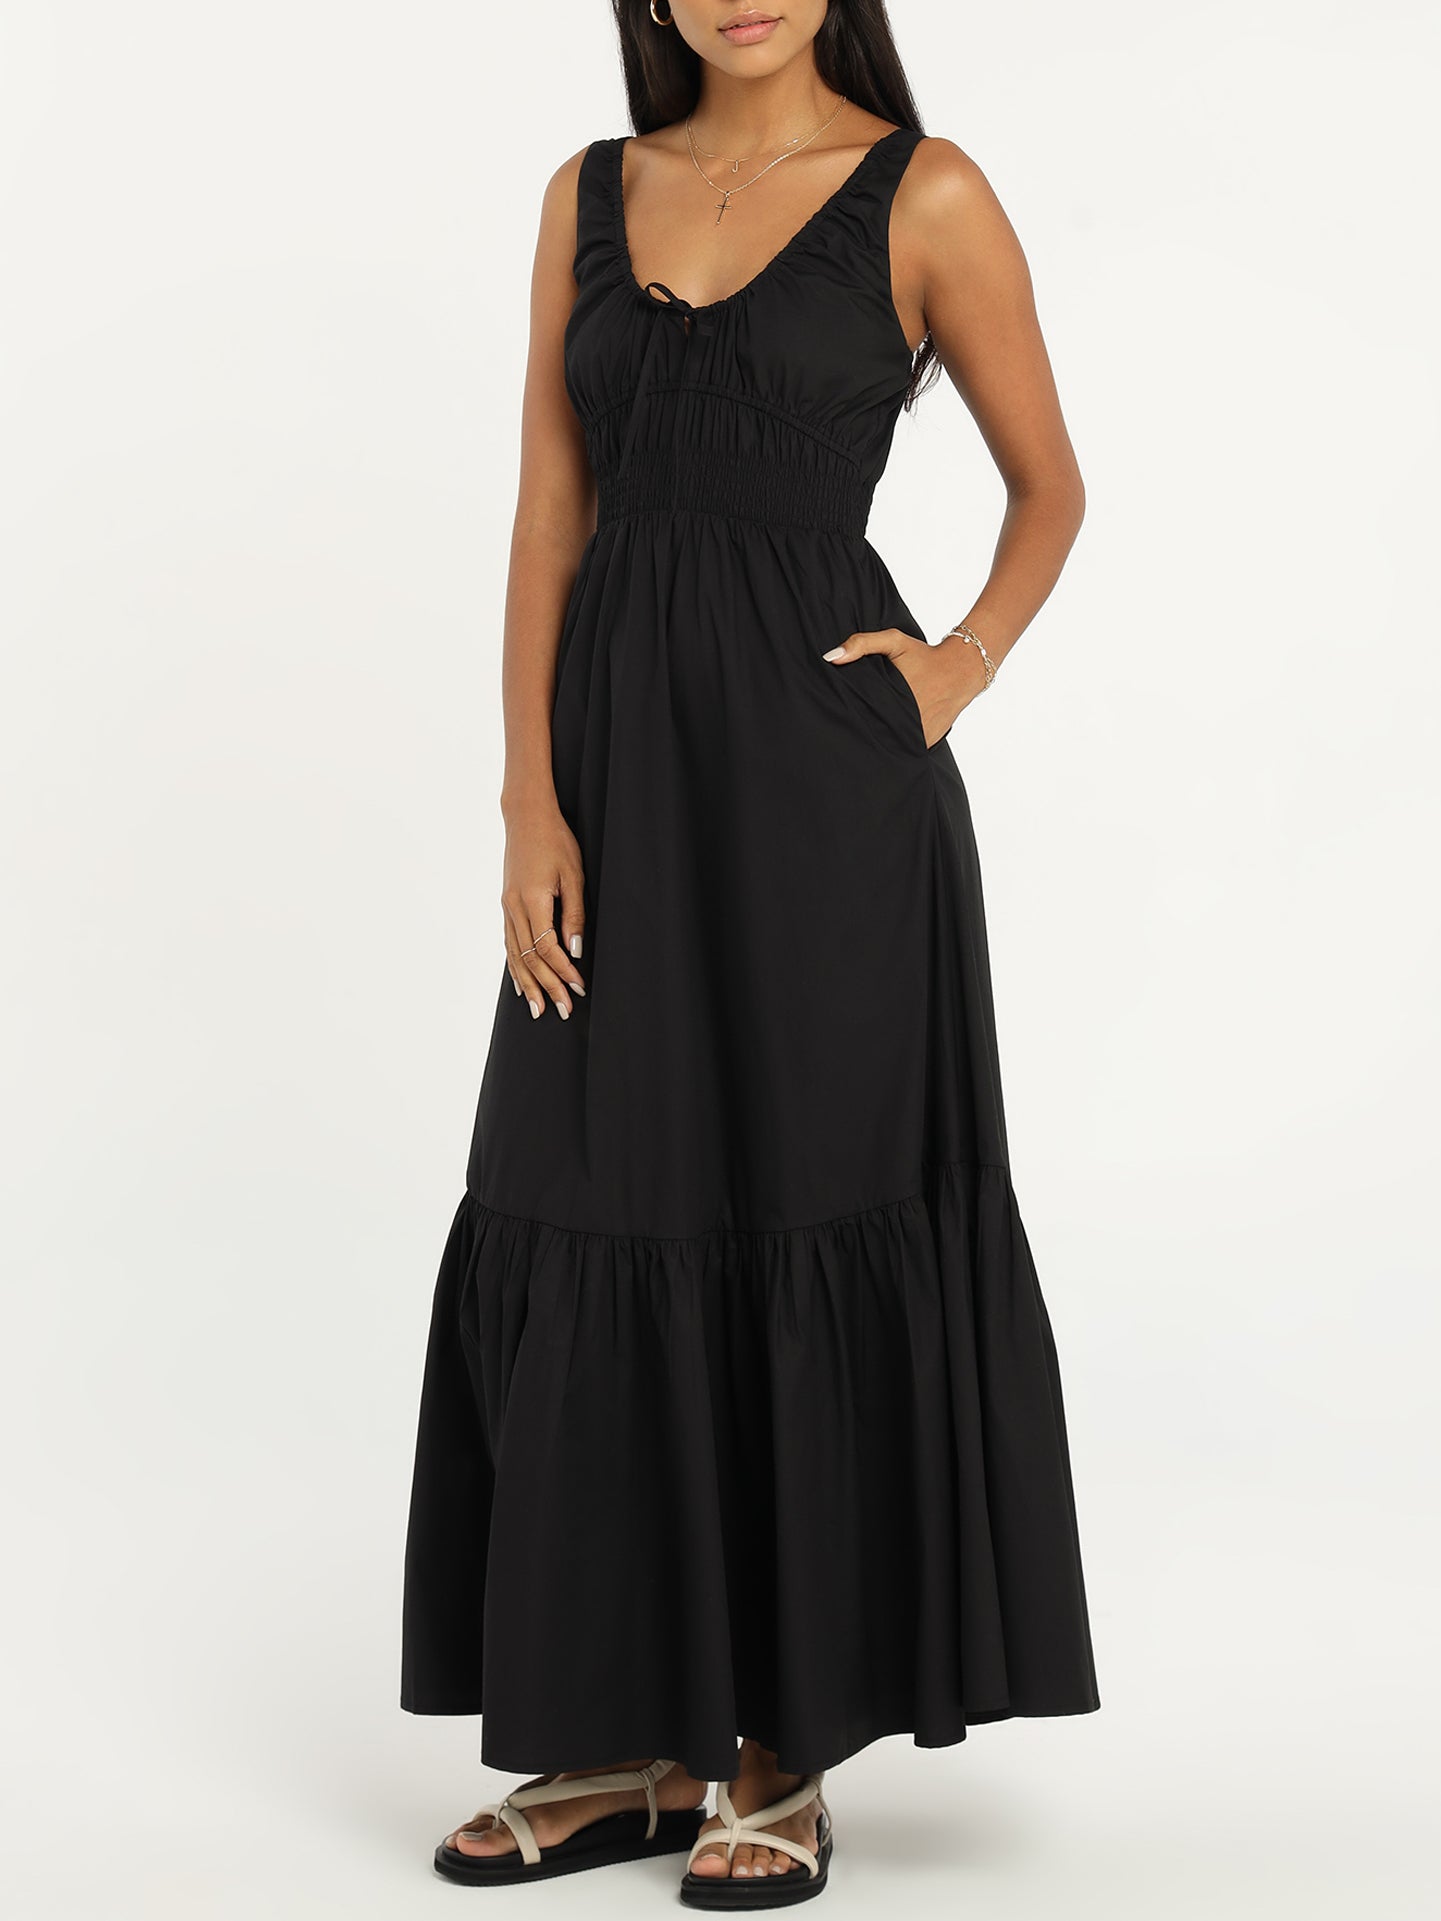 Coralie Dress in Black